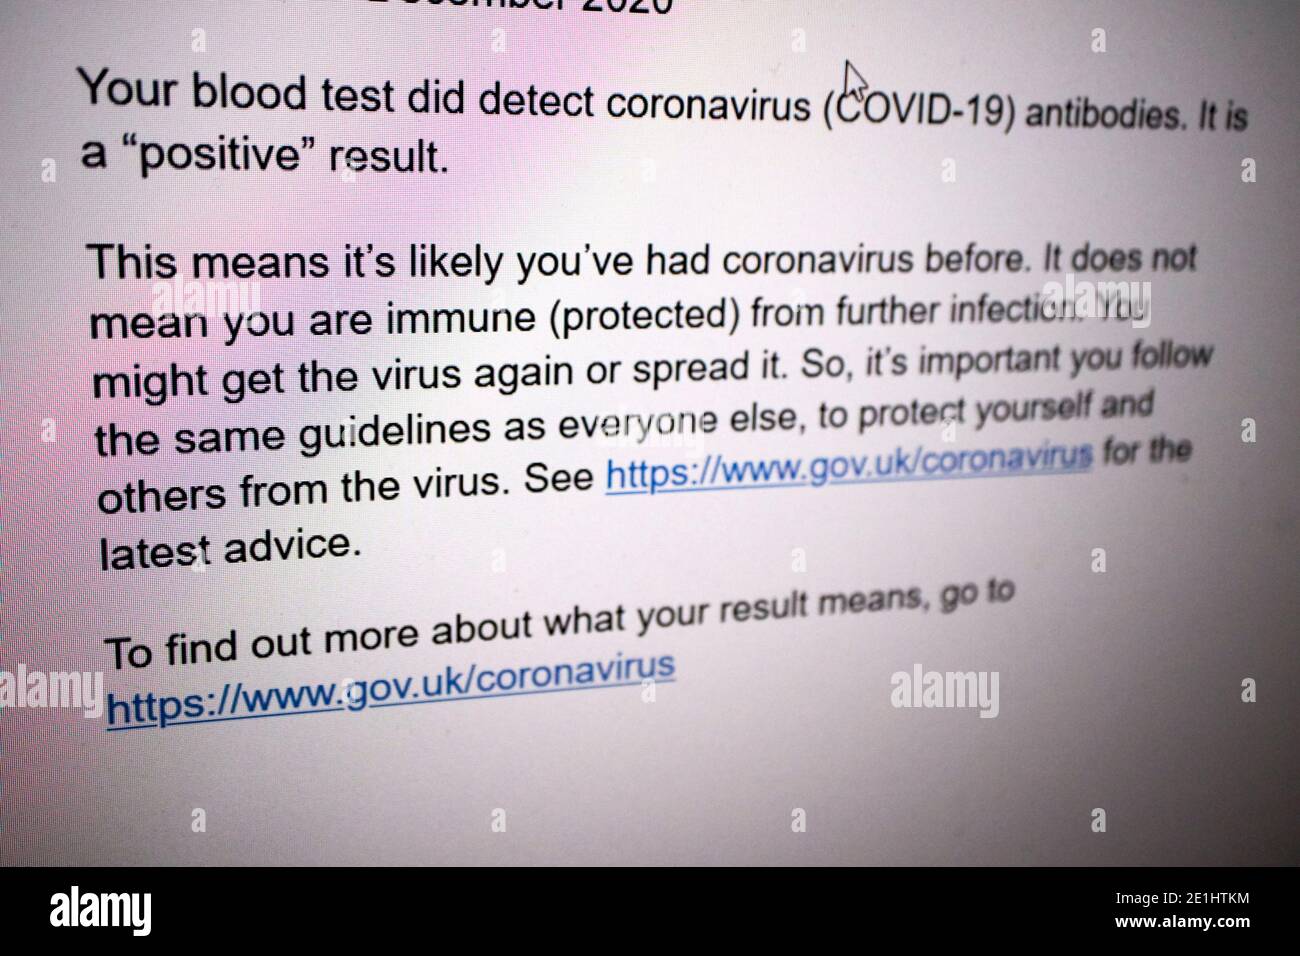 Bildschirmmeldung, die ein positives Ergebnis eines nhs ergibt Covid-19-Antikörper-Bluttest auf Coronavirus-Antikörper, die in empfangen wurden vereinigtes Königreich Stockfoto